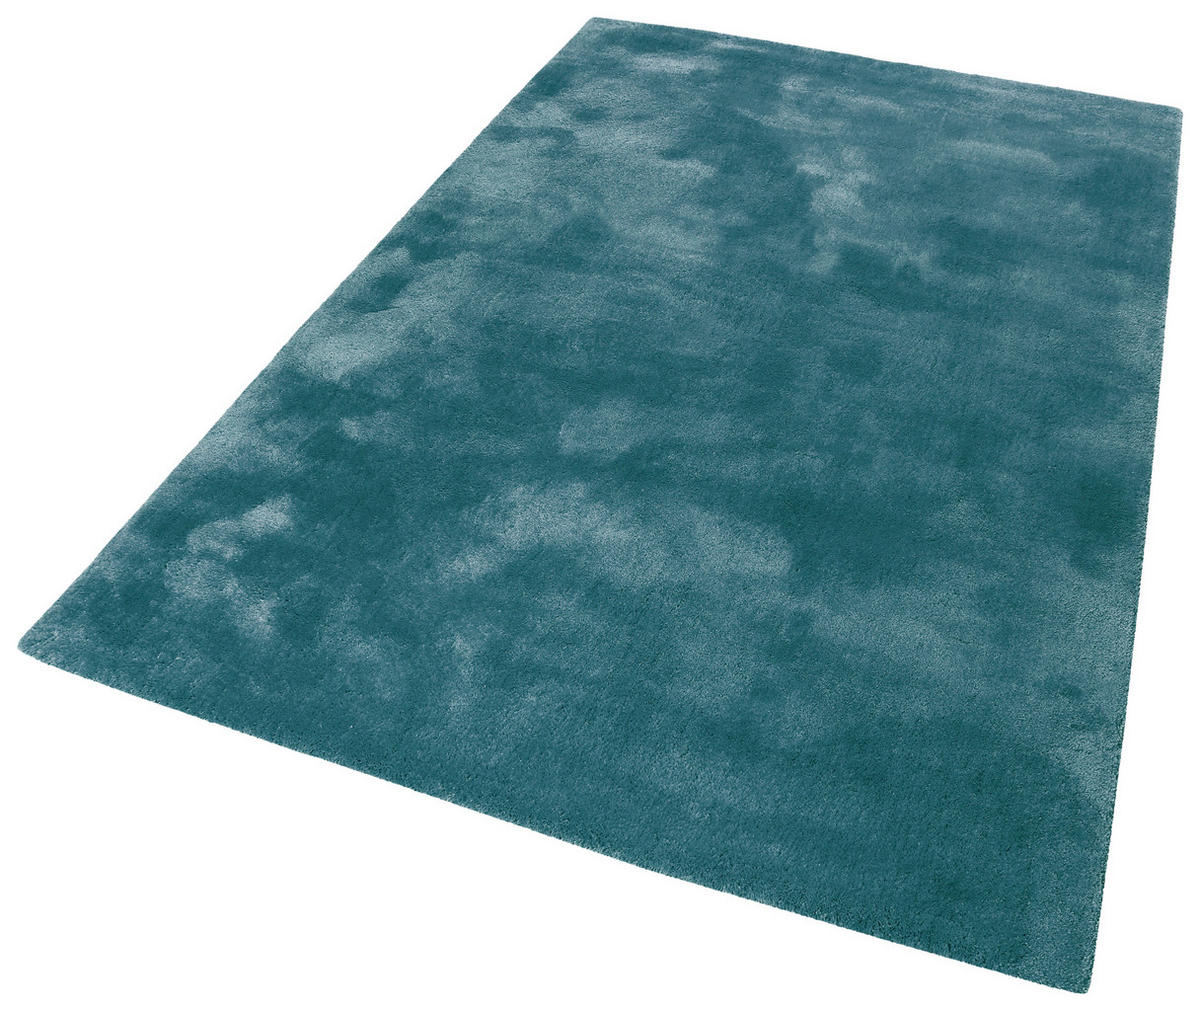 HOCHFLORTEPPICH 80/150 cm Relaxx  - Smaragdgrün, KONVENTIONELL, Textil (80/150cm) - Esprit